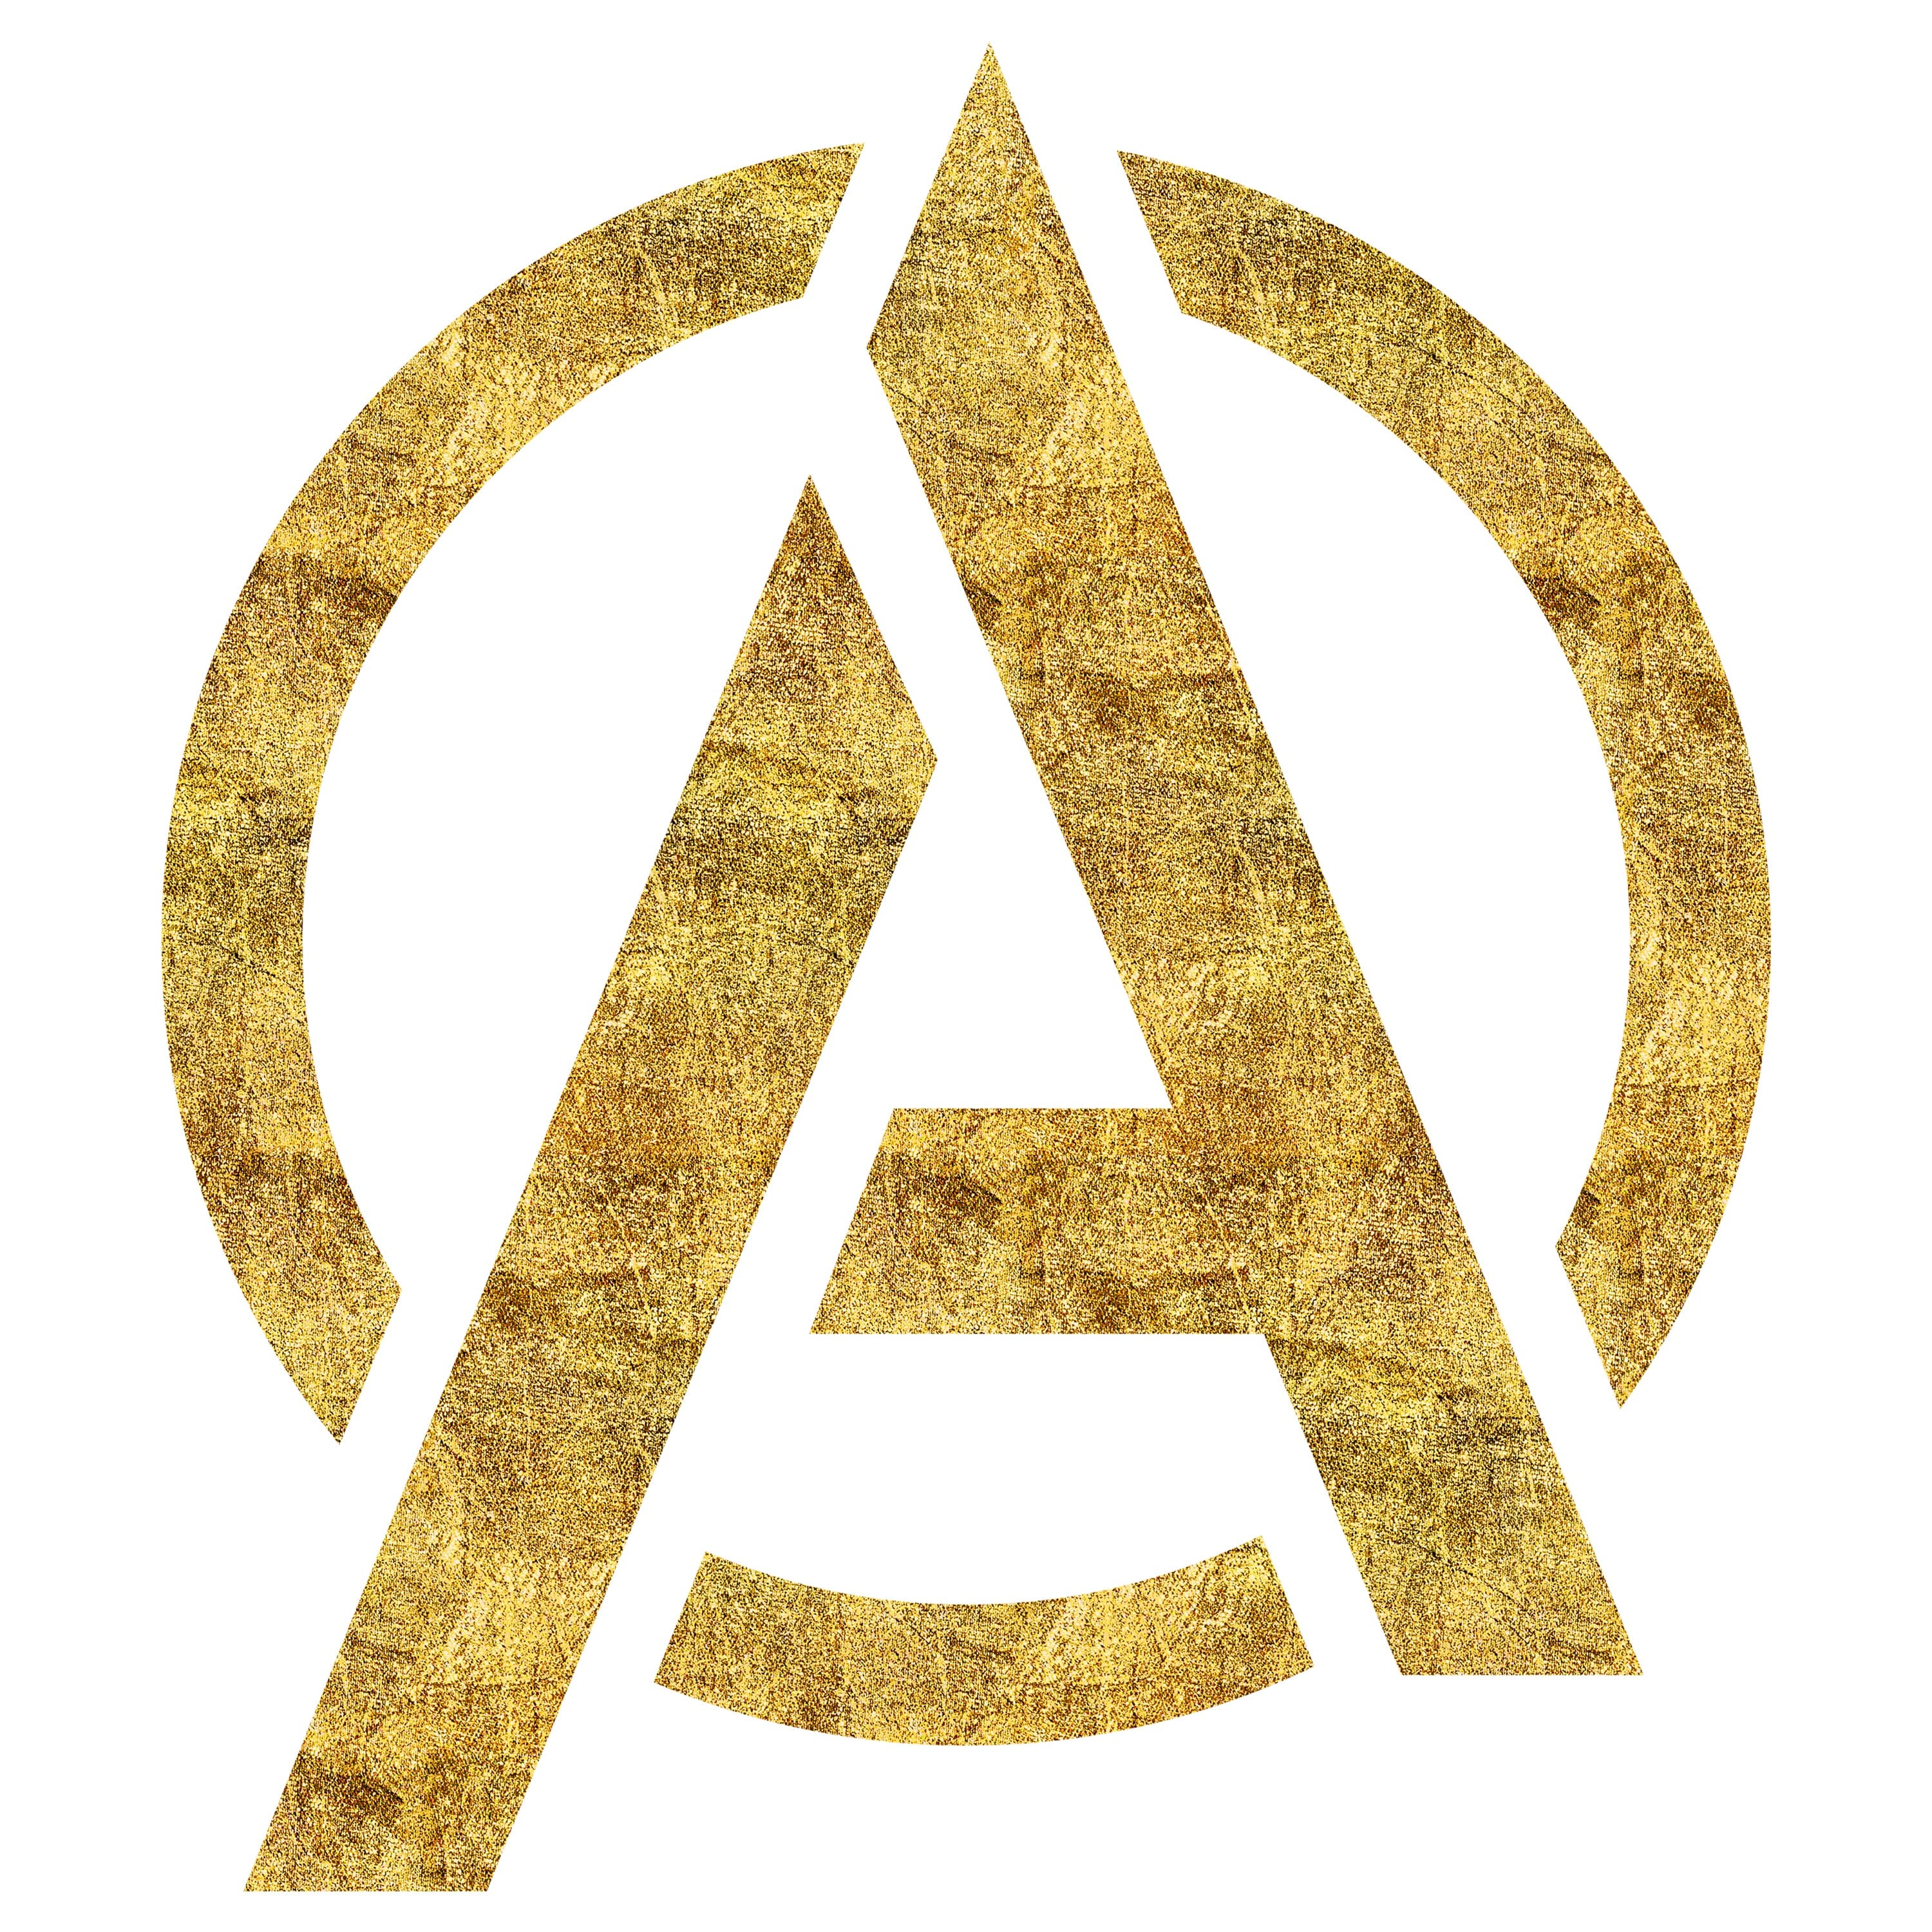 Avengers logo design by Ann Marie Lombardo